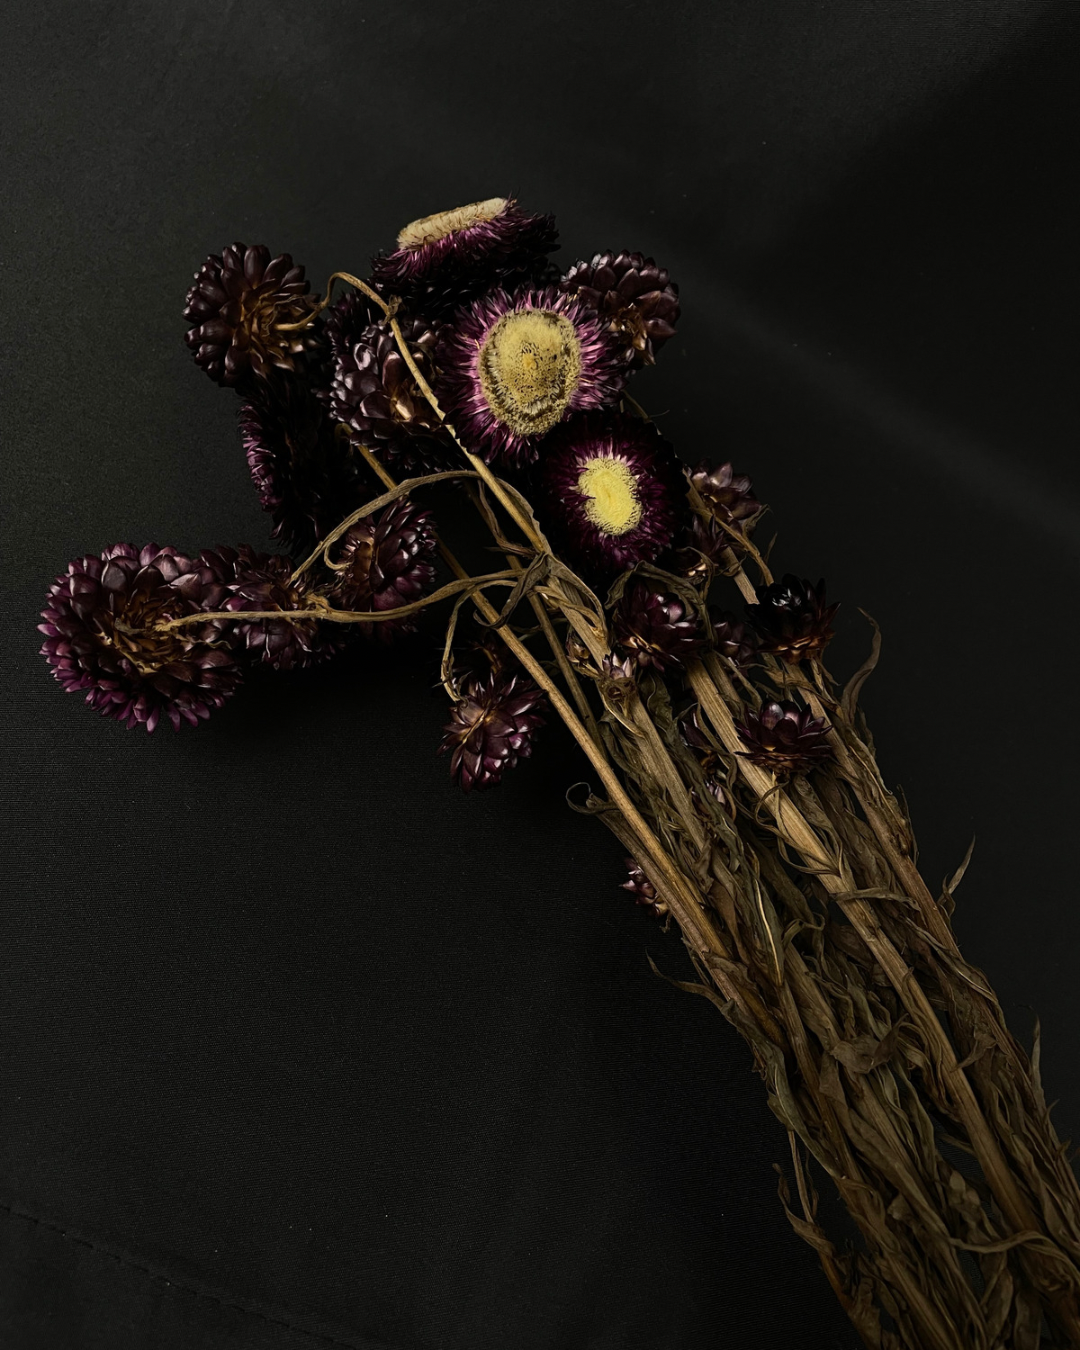 Dried Helichrysum